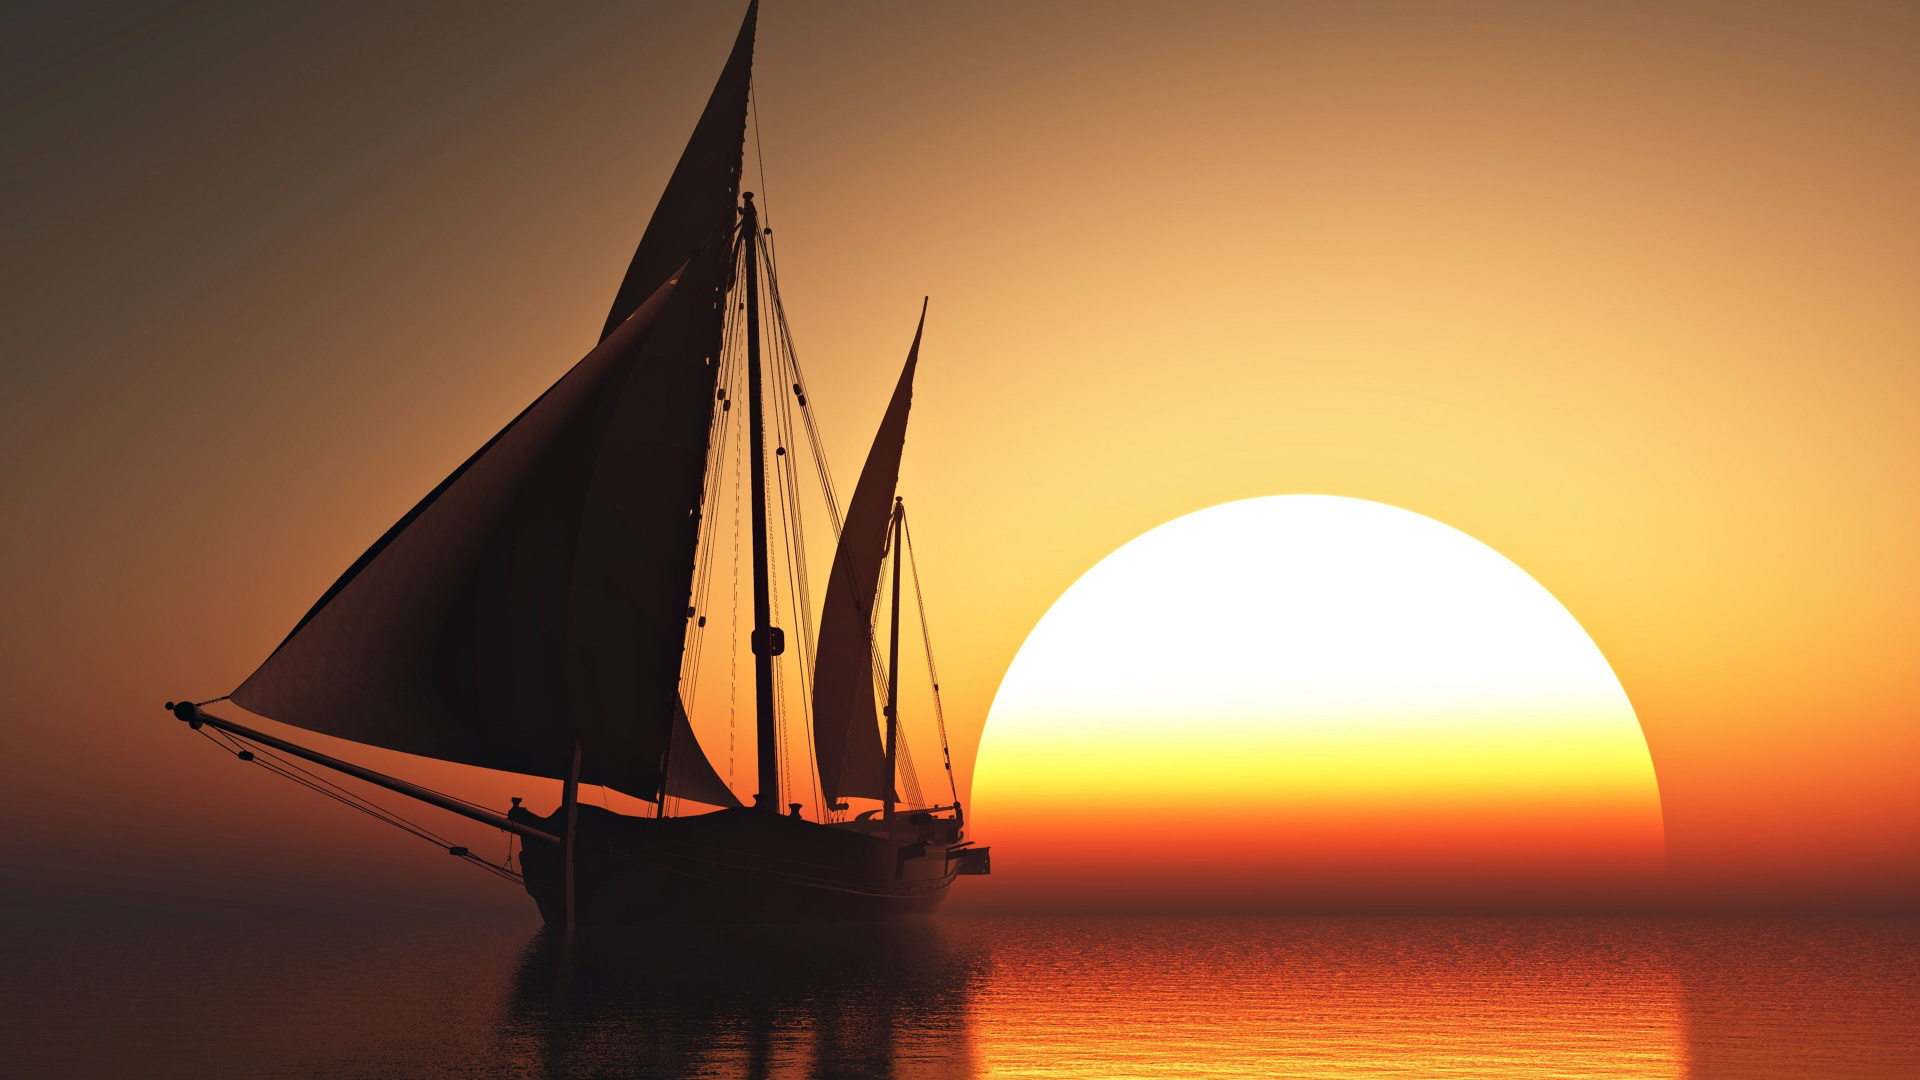 Silhouette Eines Segelboots Auf Dem Meer Bei Sonnenuntergang. Wallpaper in 1920x1080 Resolution